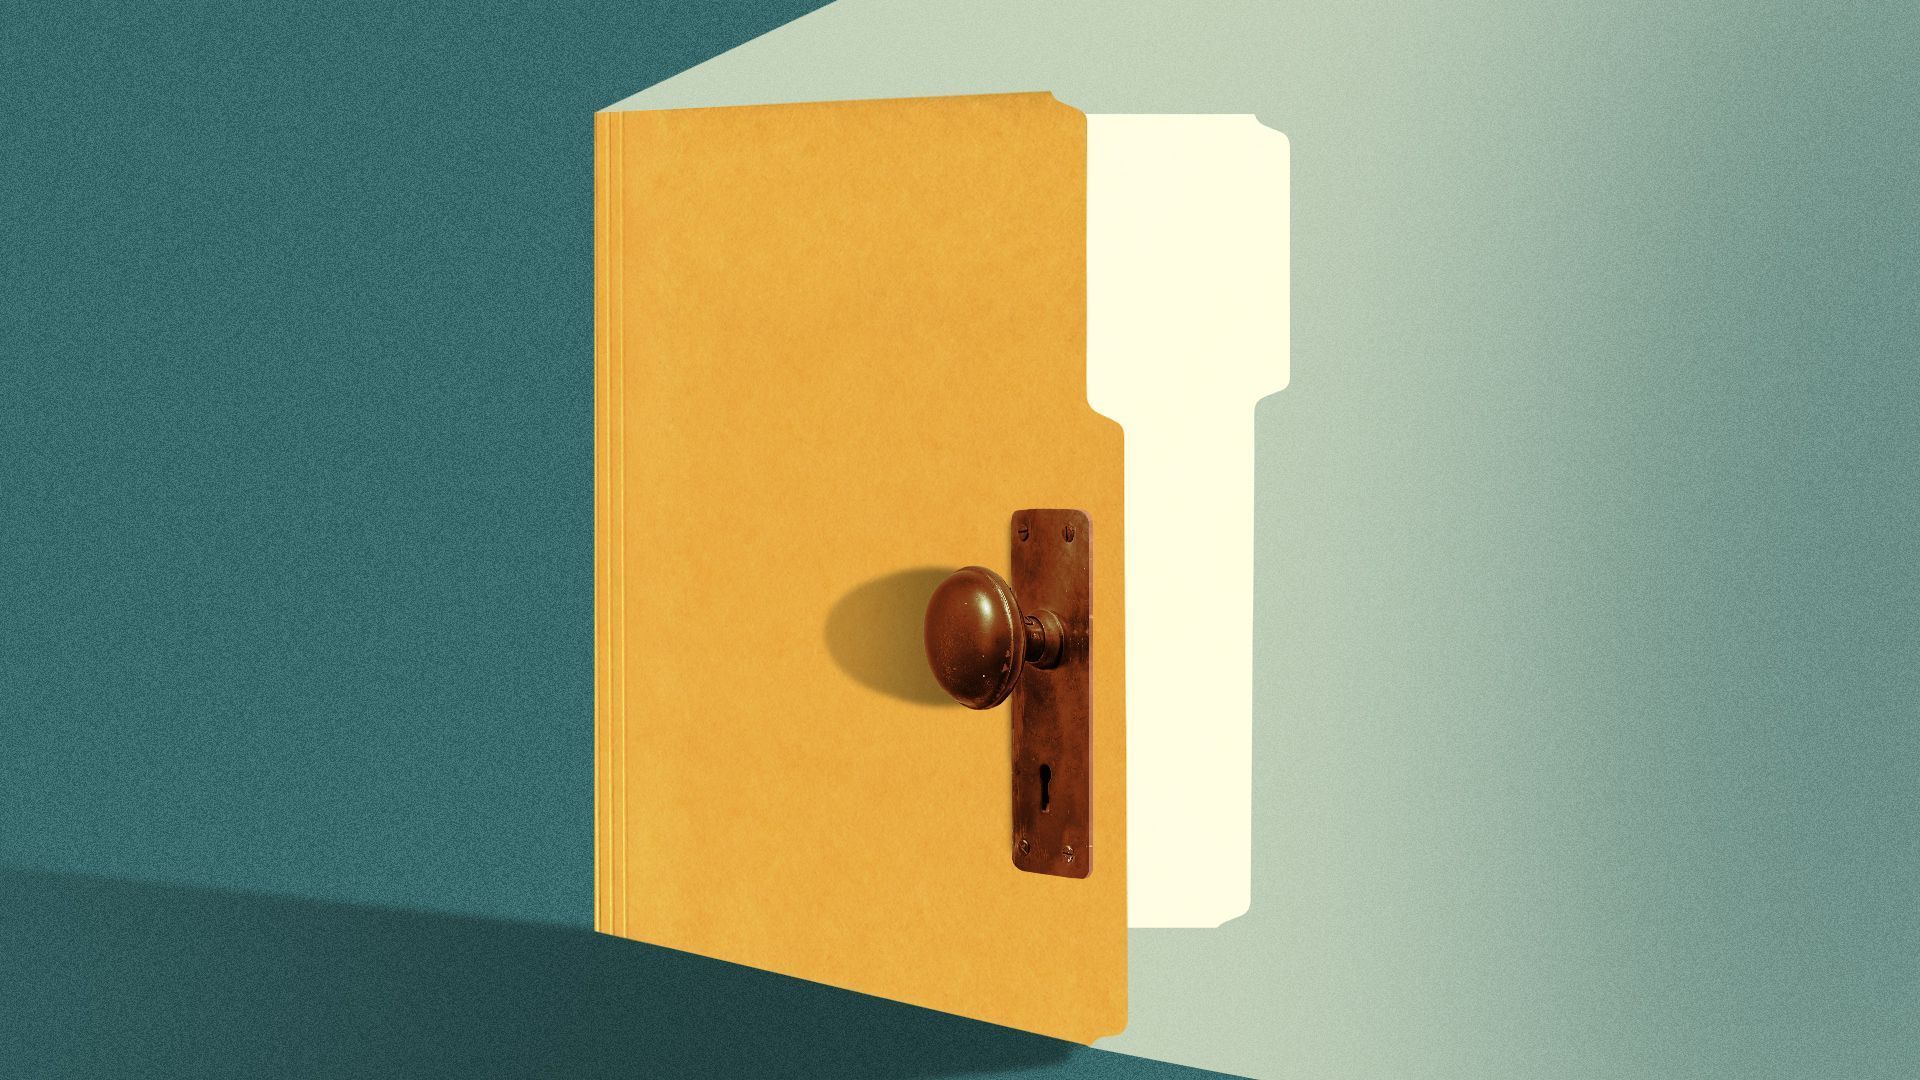 A file folder opening like a door.